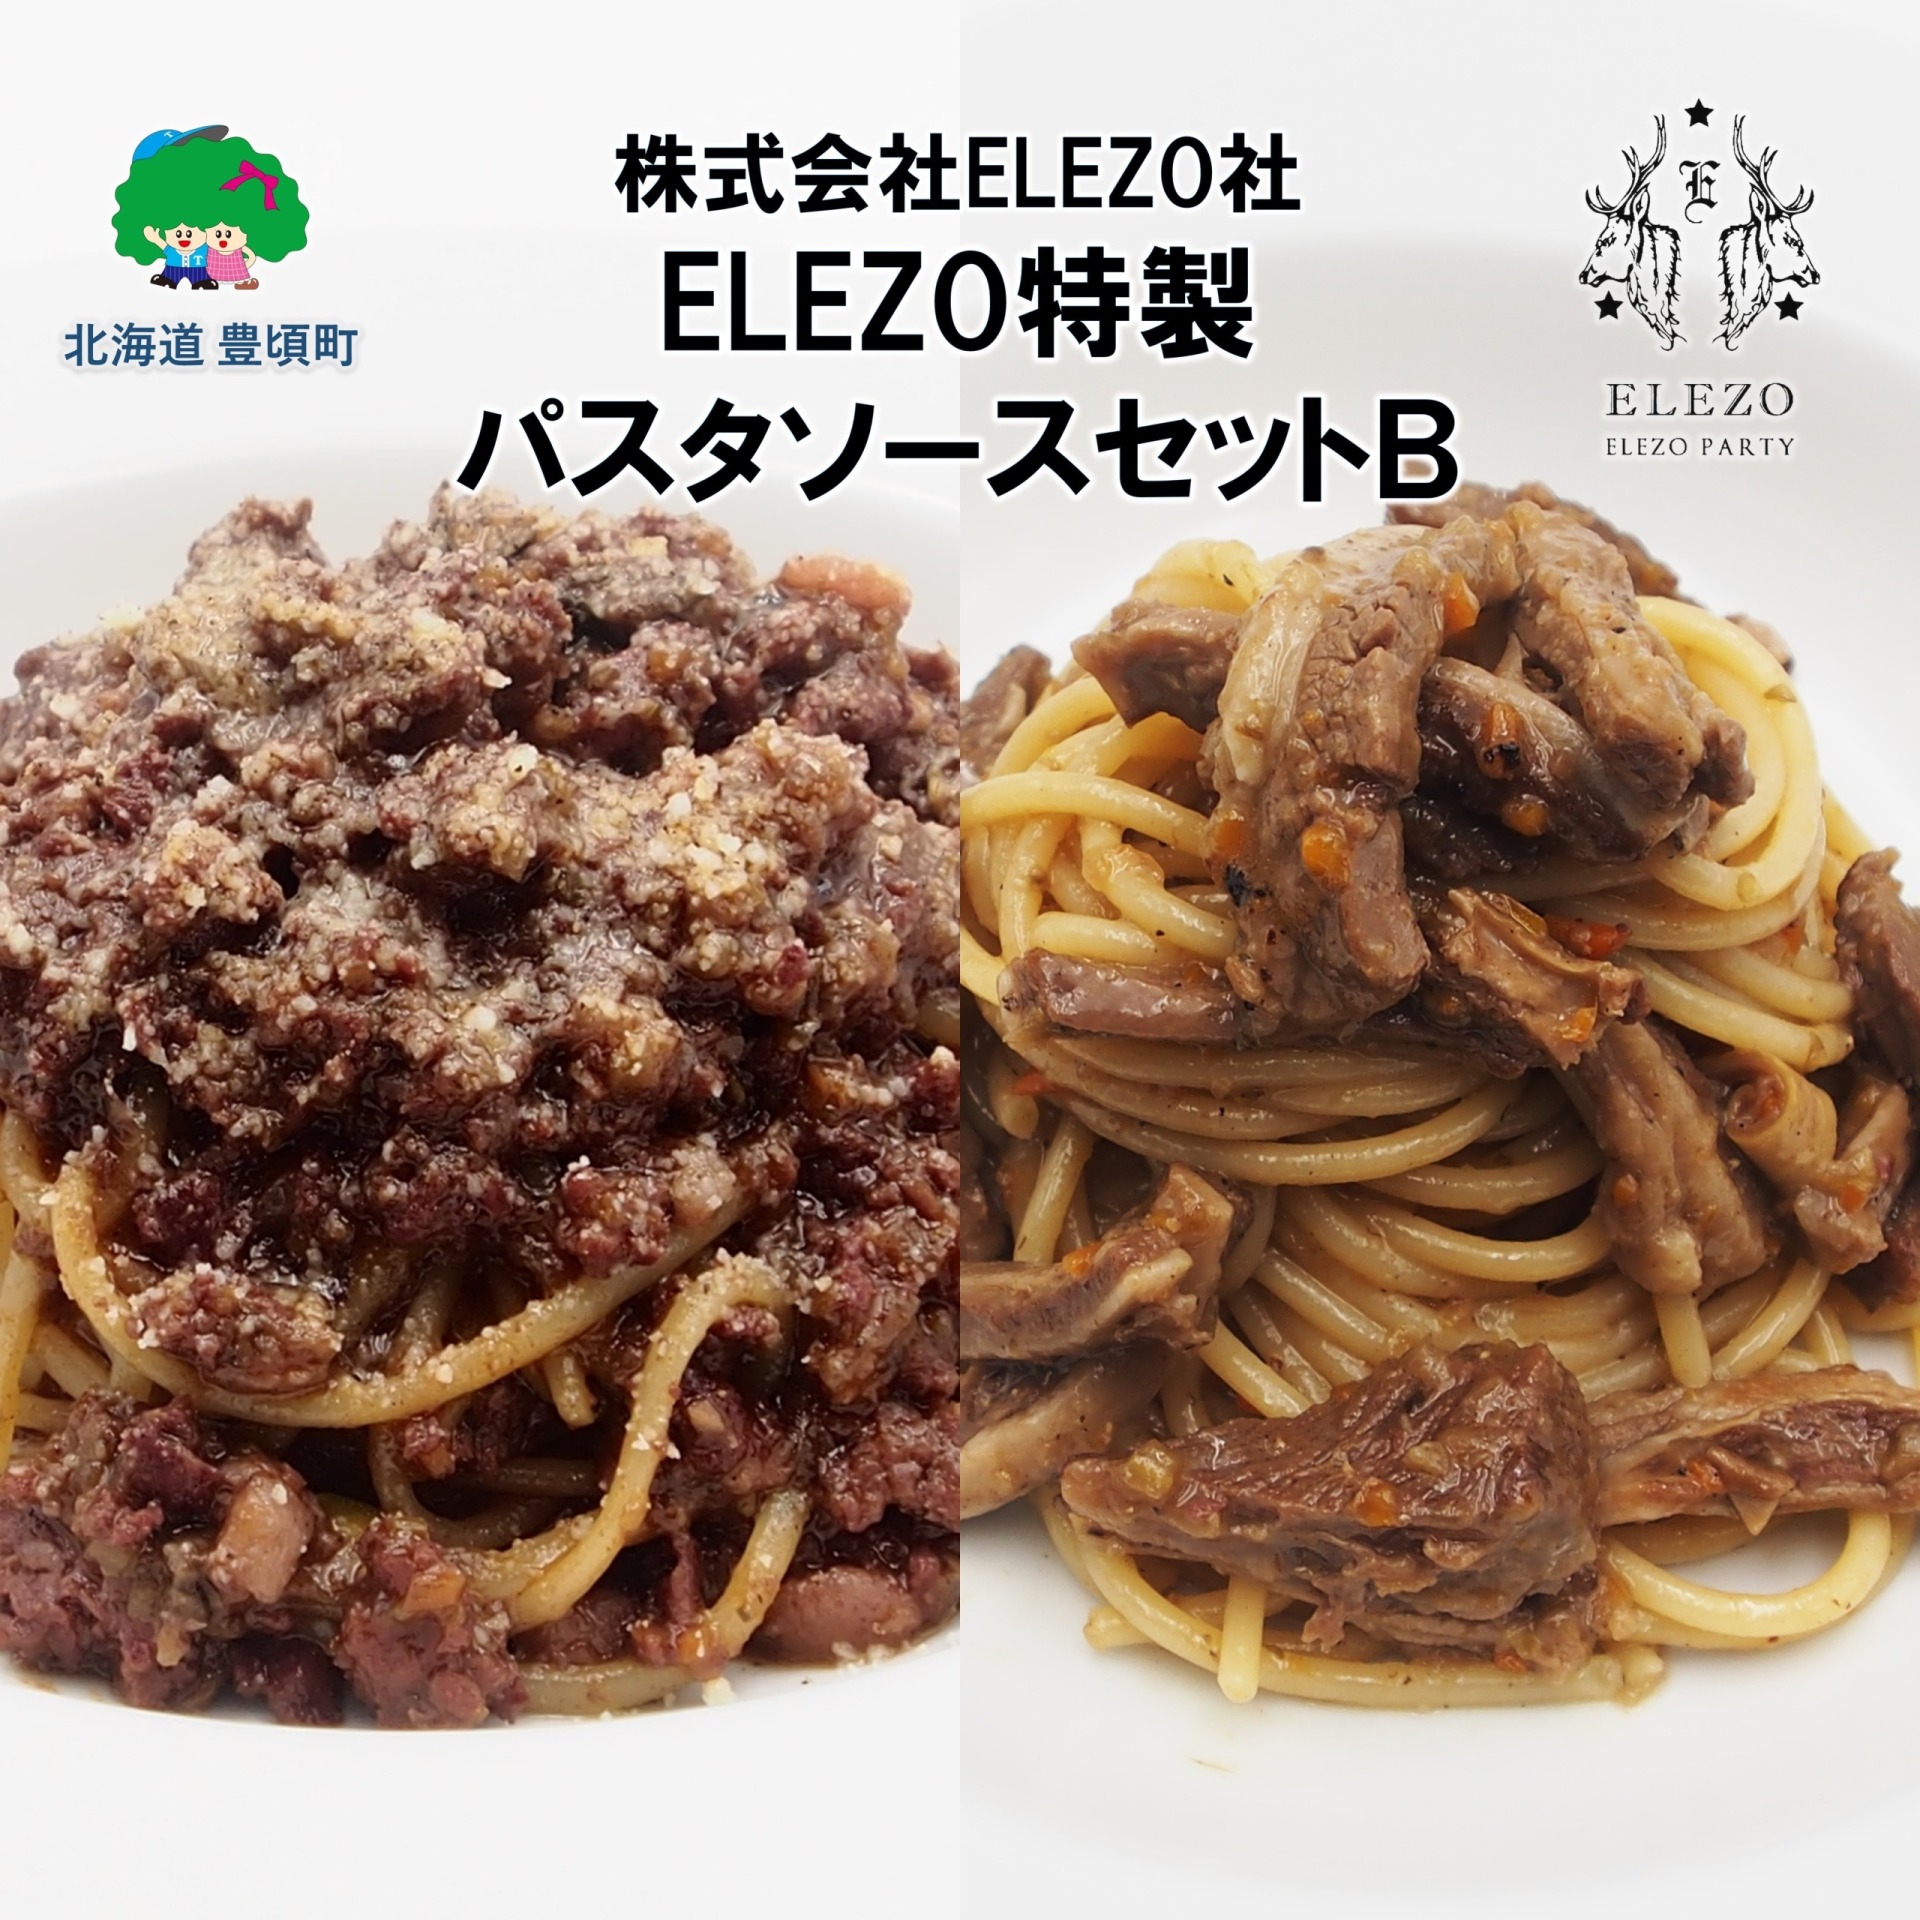 肉屋のパスタソースセットB【株式会社ELEZO社】